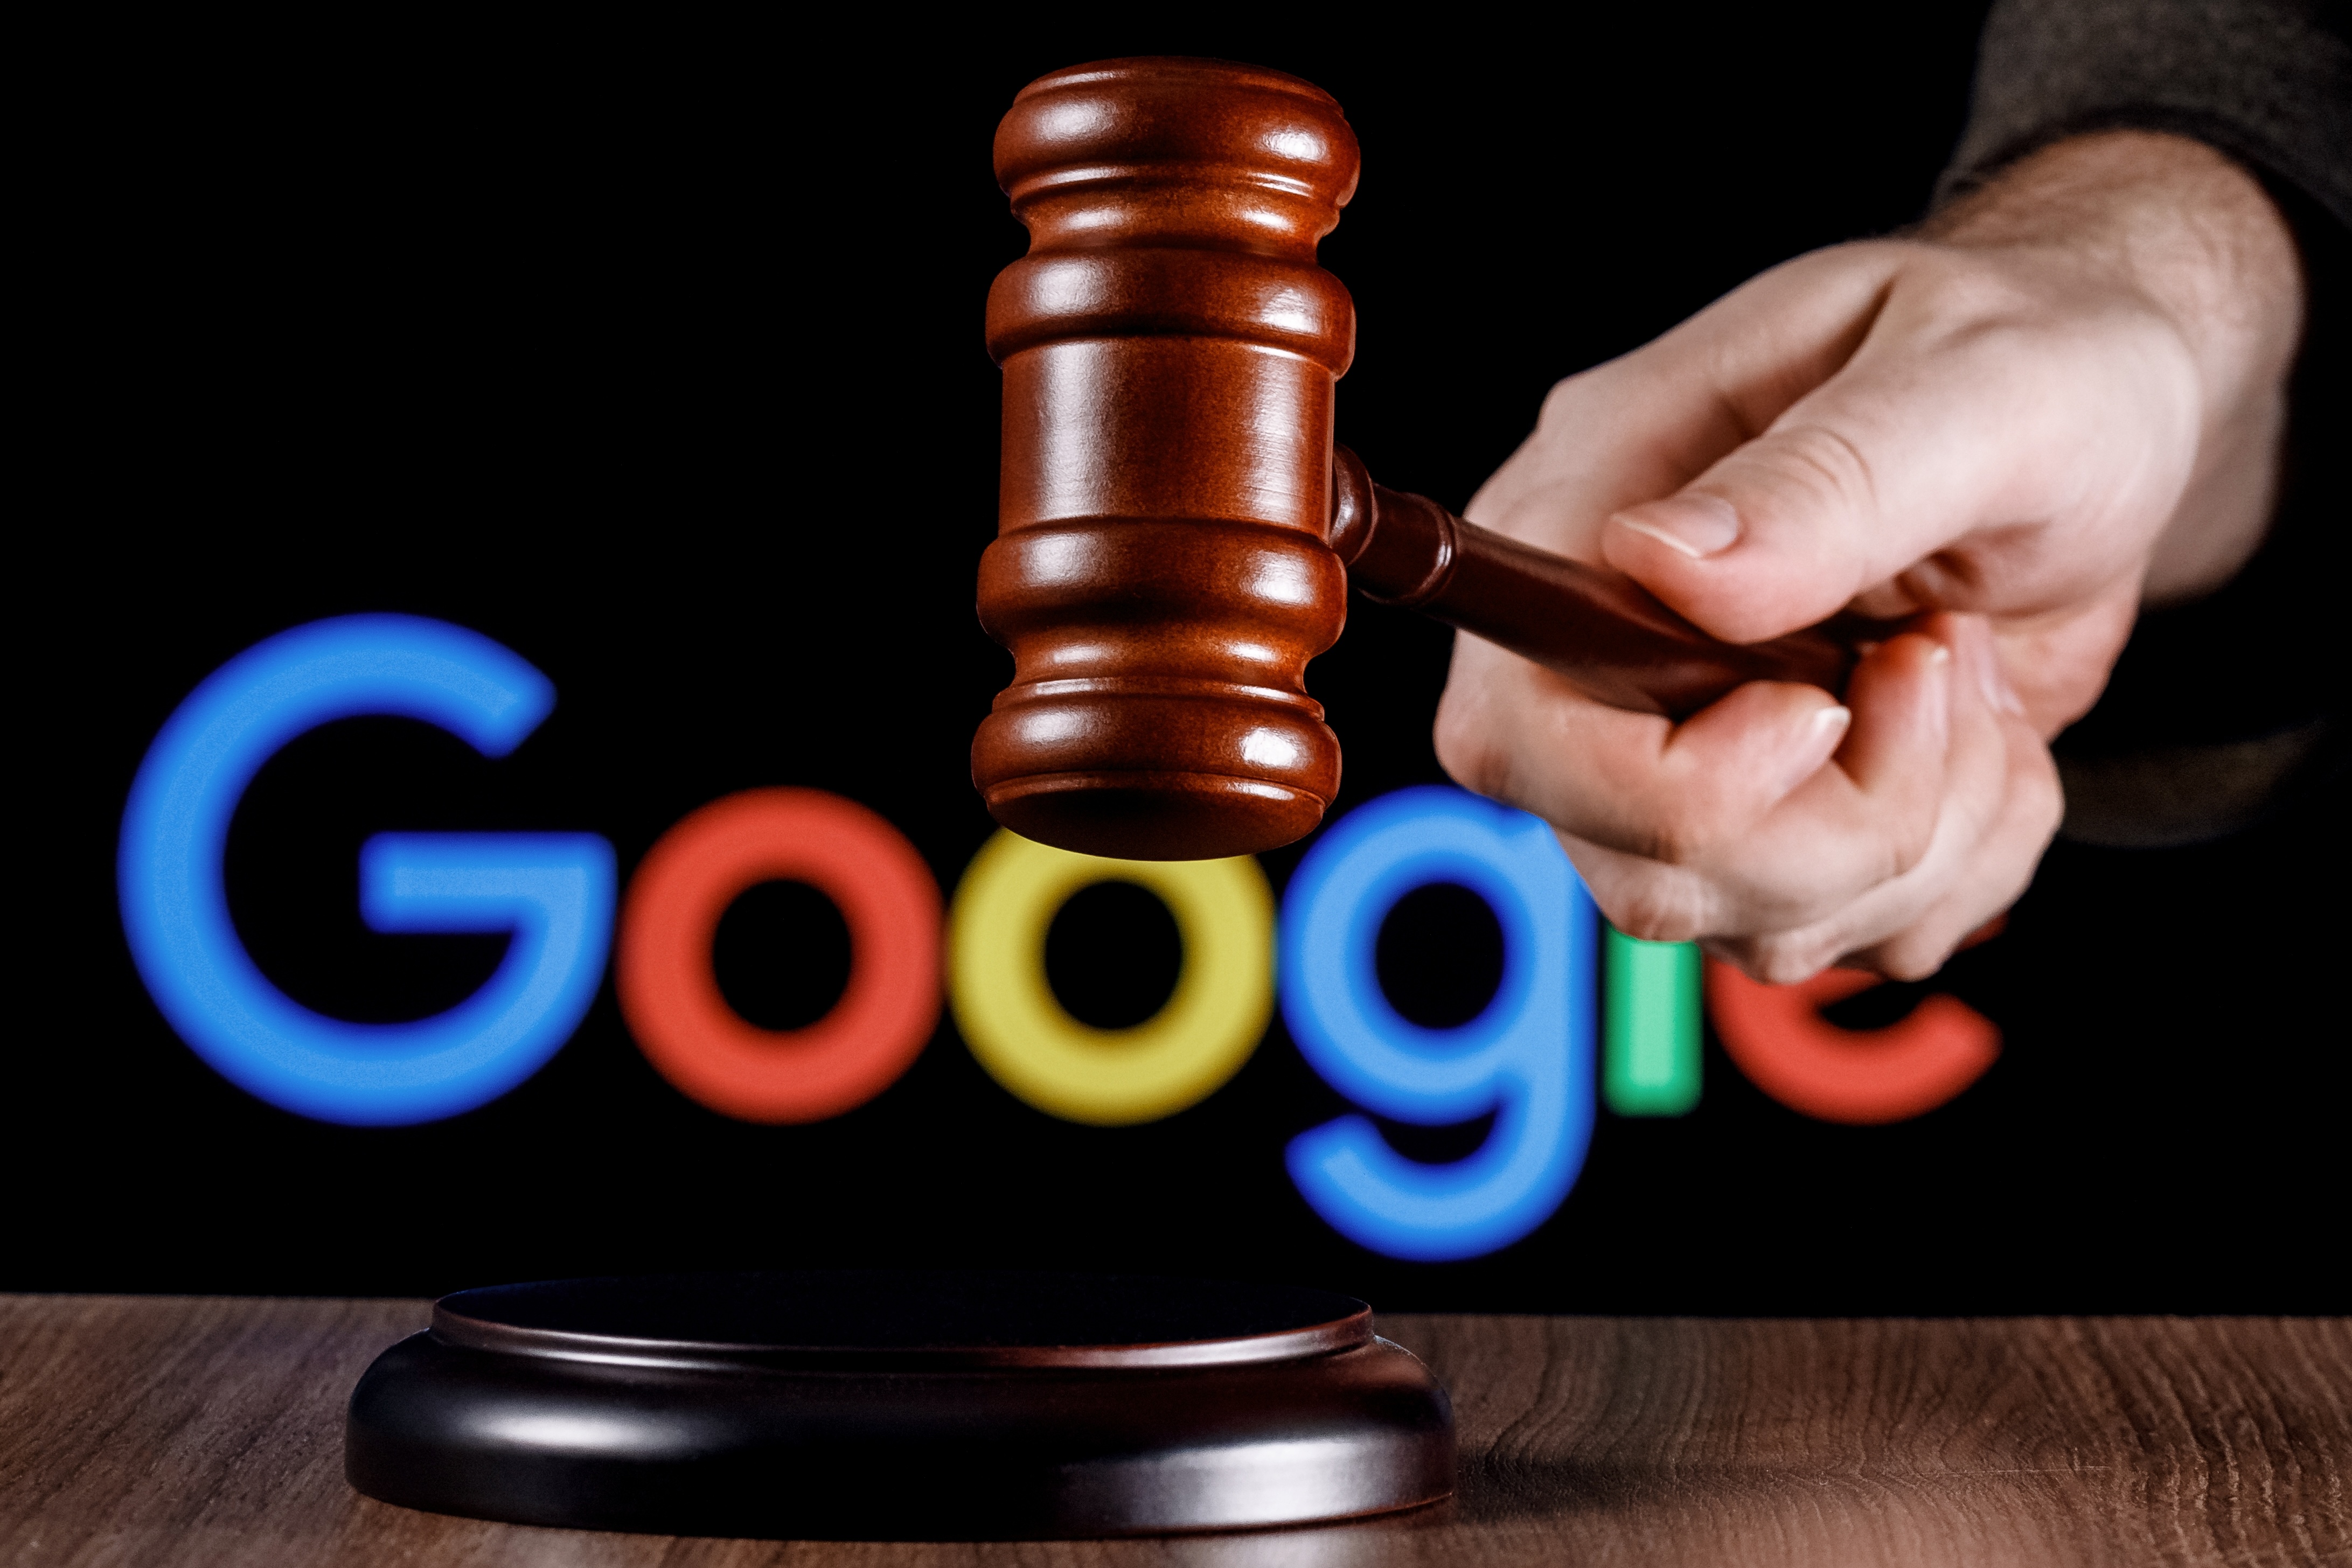 Google Shopping : 14 ans après le début de l'enquête de l'UE, l'amende de 2,4 milliards d'euros en passe d'être confirmée